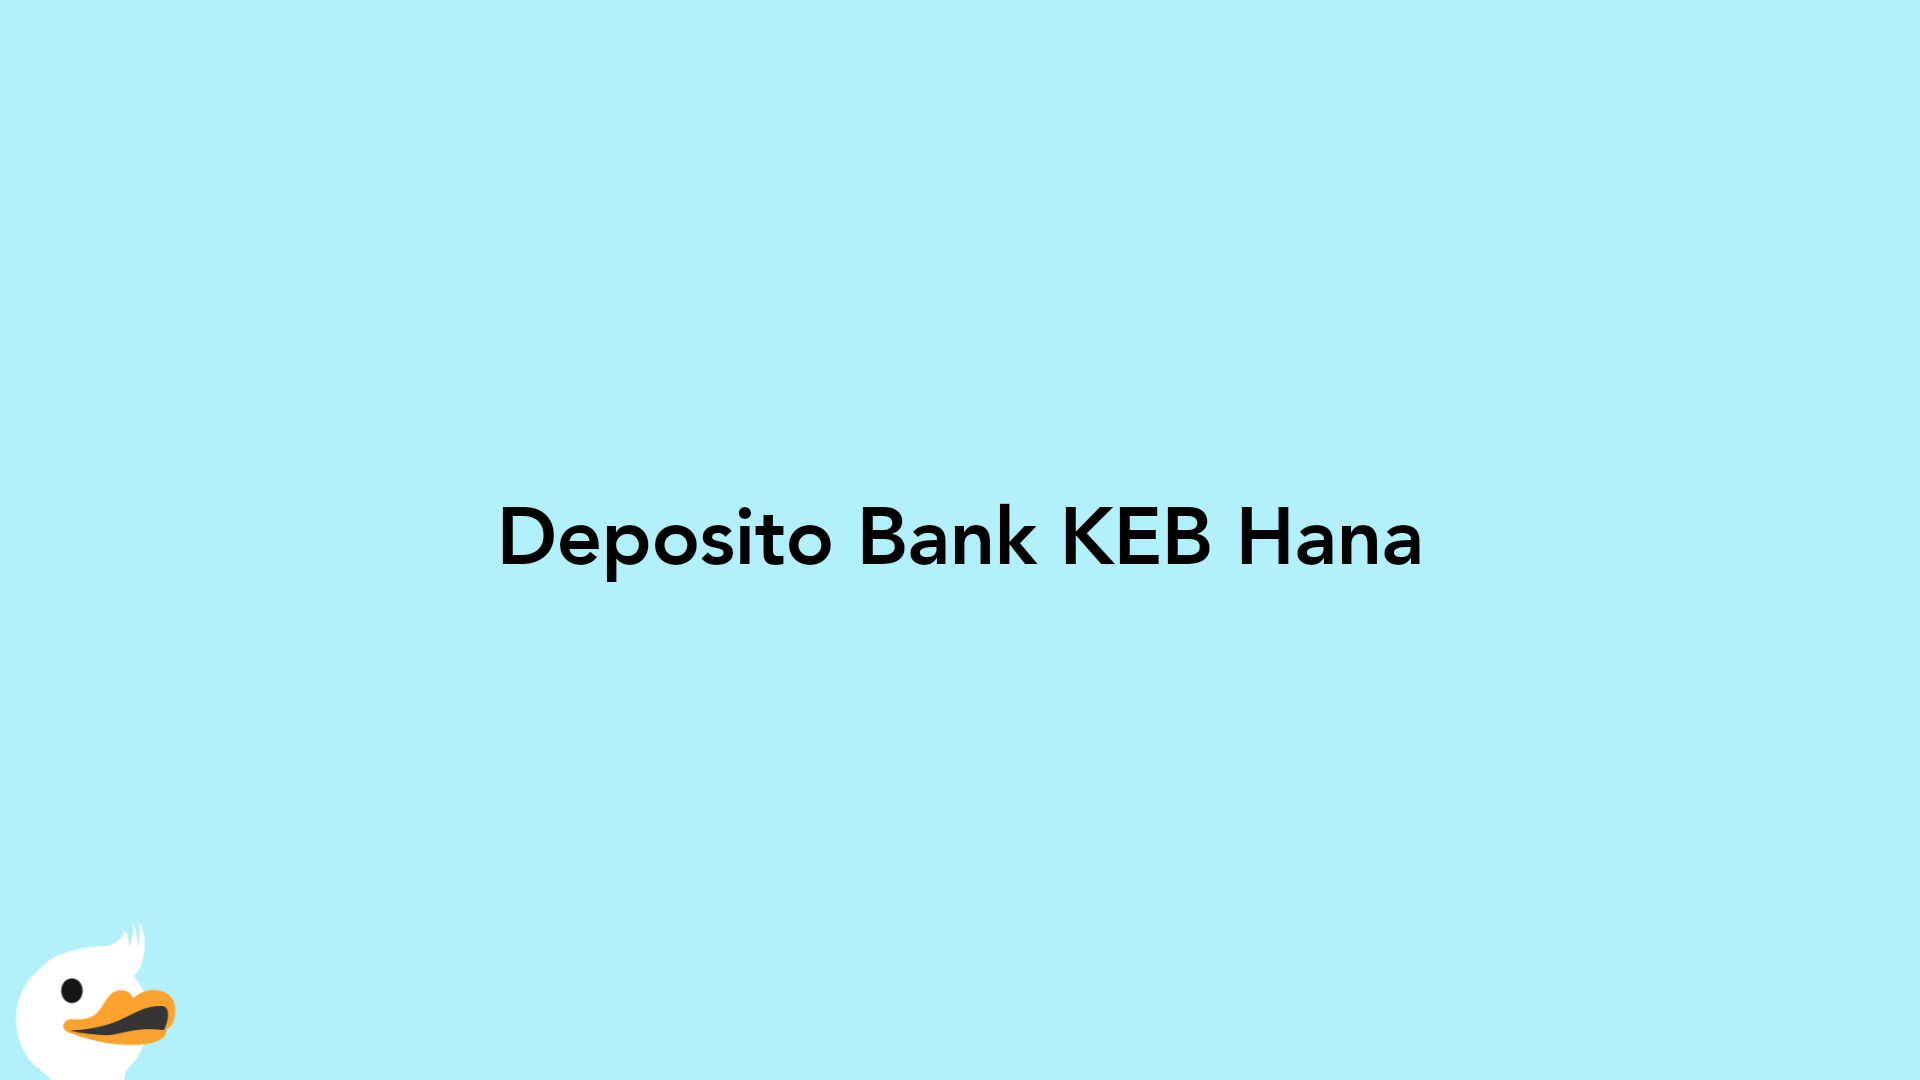 Deposito Bank KEB Hana